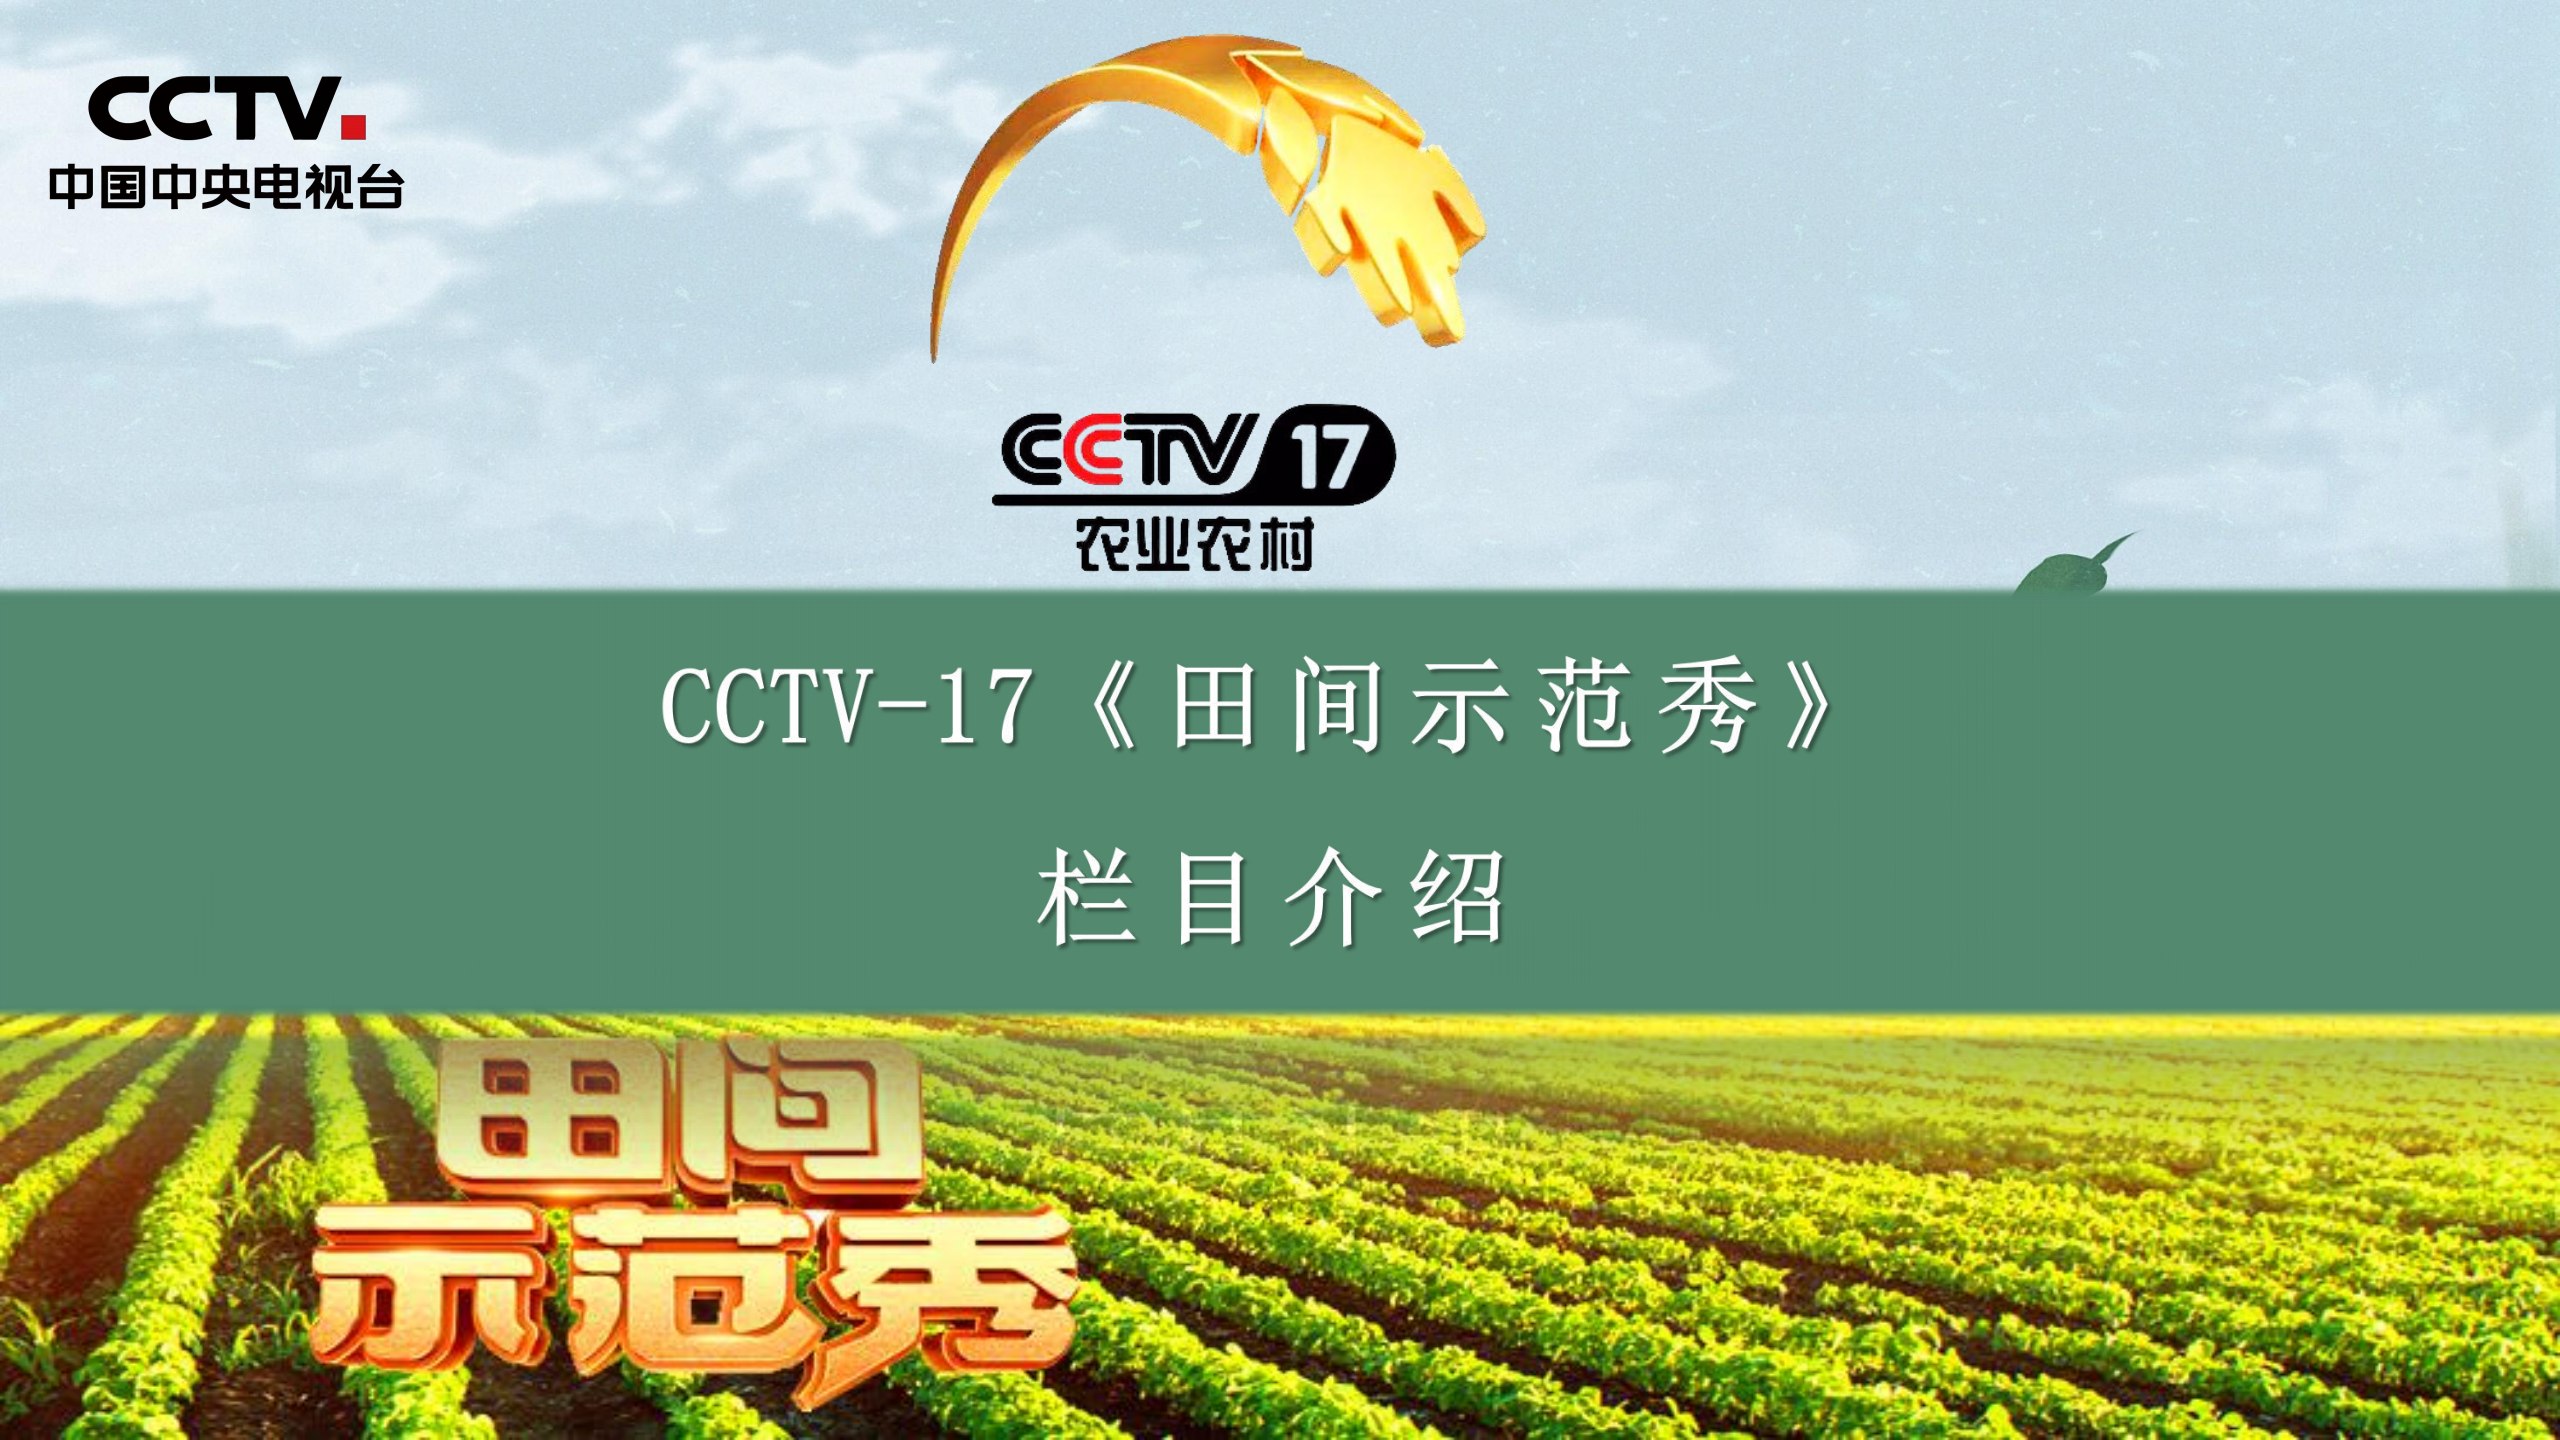 2021年CCTV17农业农村频道田间示范秀栏目介绍